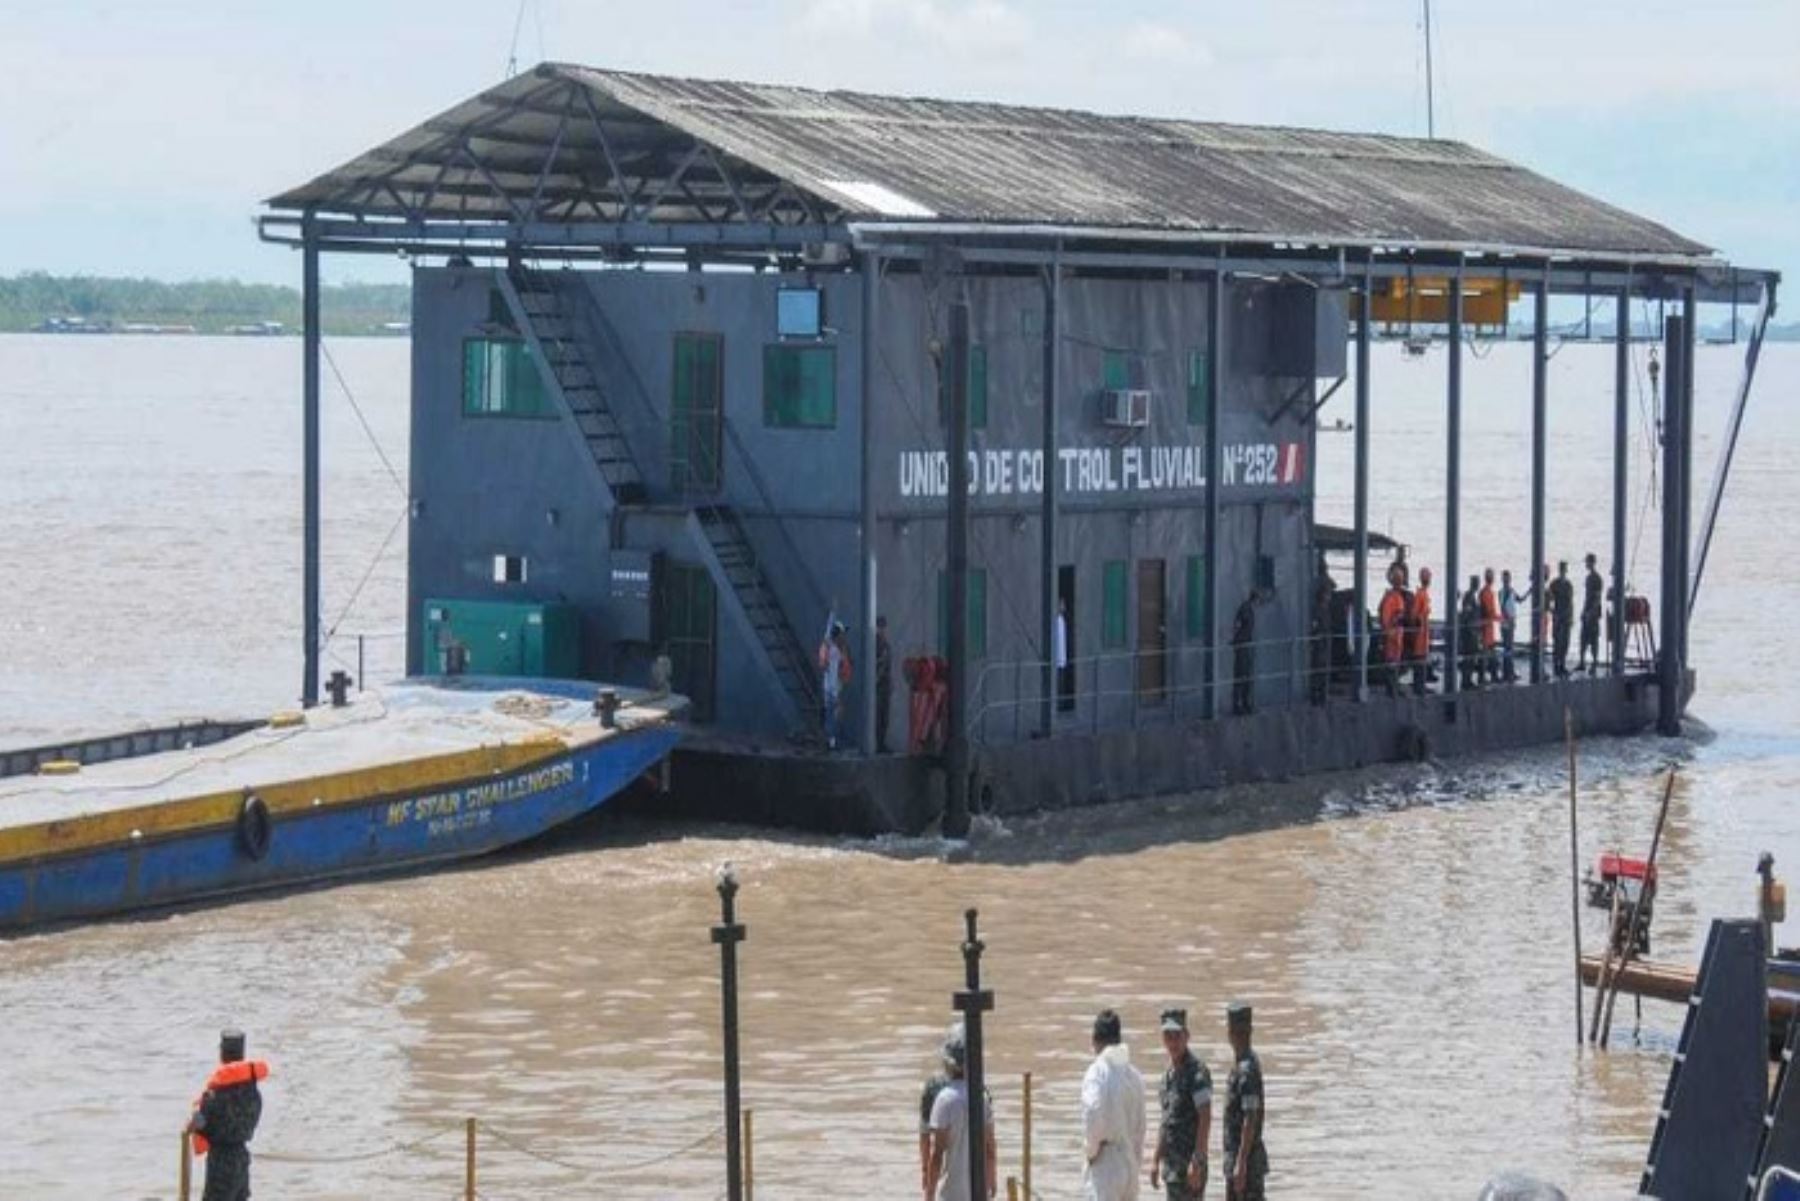 La unidad de control fluvial (UCF) “Río Pacaya”, embarcación de la Marina de Guerra puesta recientemente en operación y cuya función es combatir ilícitos en los ríos de la región Ucayali, también atenderá a las poblaciones afectadas por inundaciones u otras emergencias.